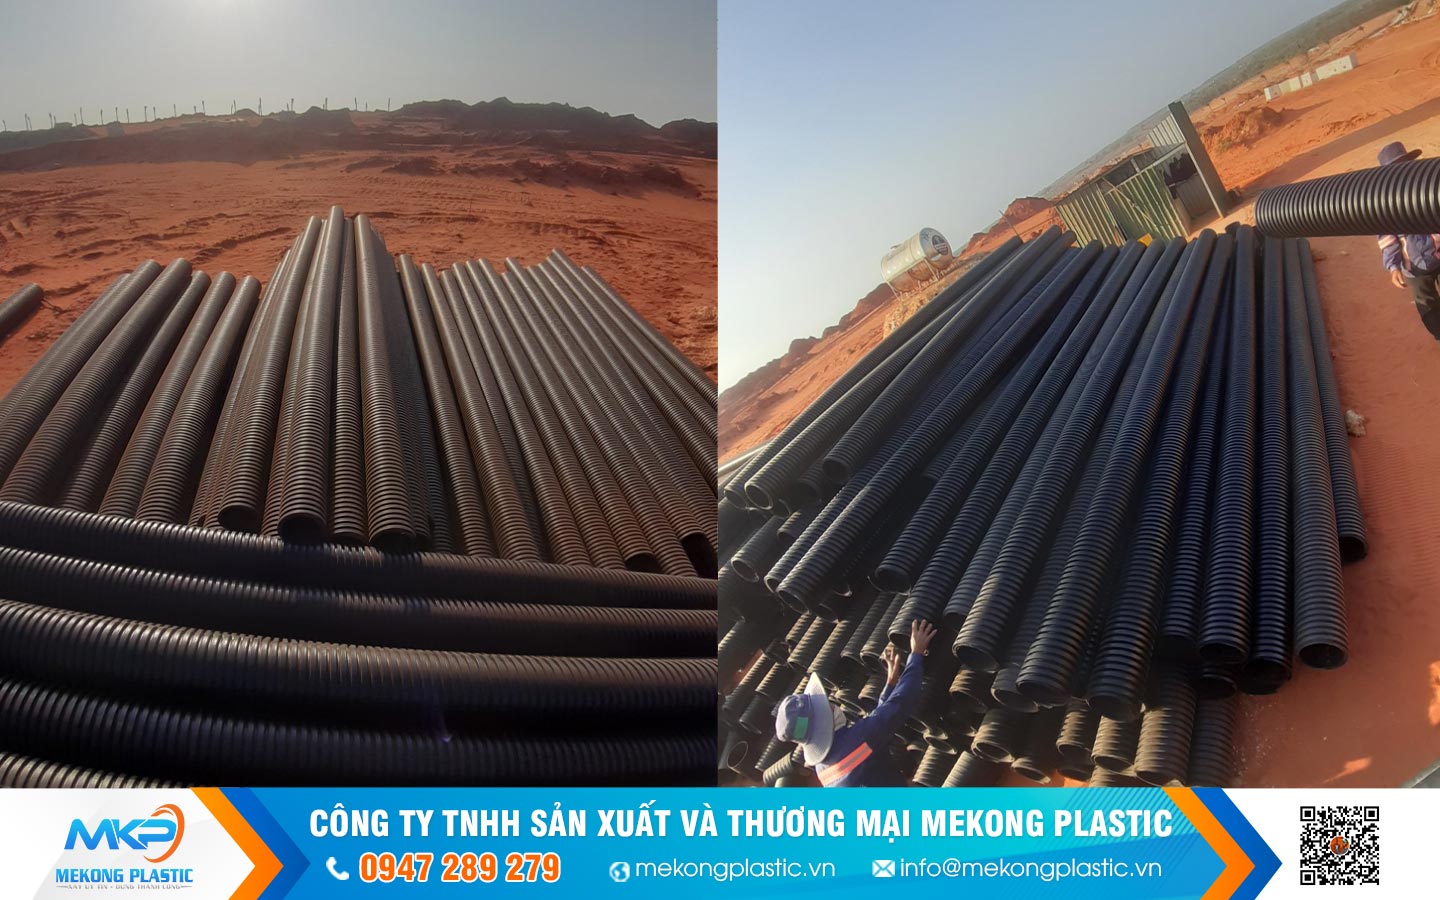 Cách Lựa Chọn Và Sử Dụng Ống Nhựa HDPE 2 Vách tại Mekong Plastic